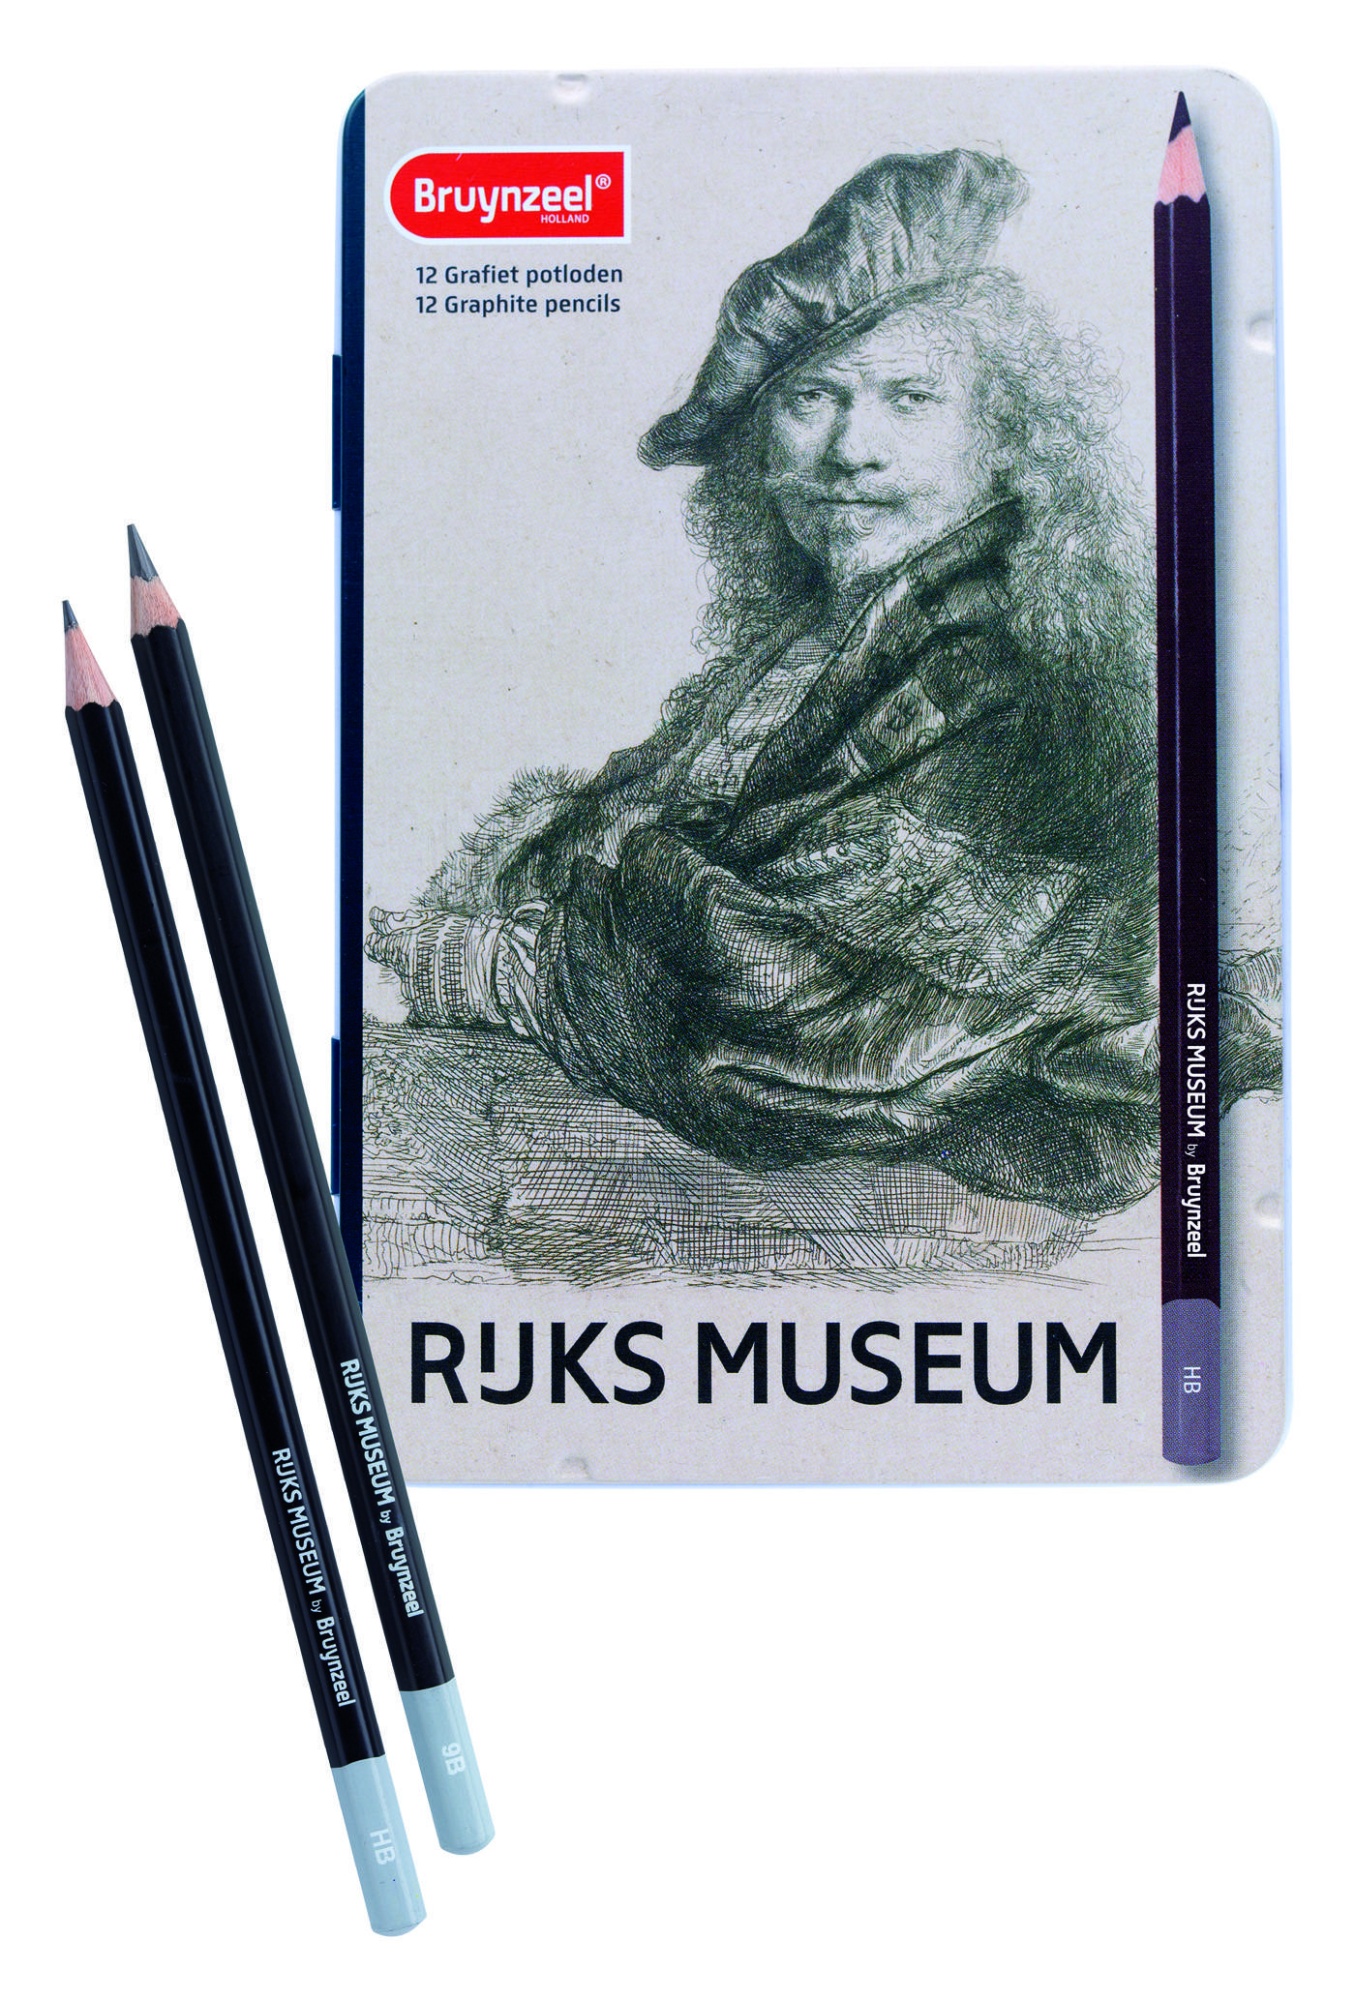 Набор чернографитовых карандашей Rijksmuseum 'Автопортрет' Рембрандт 12 цветов в металлической упаковке